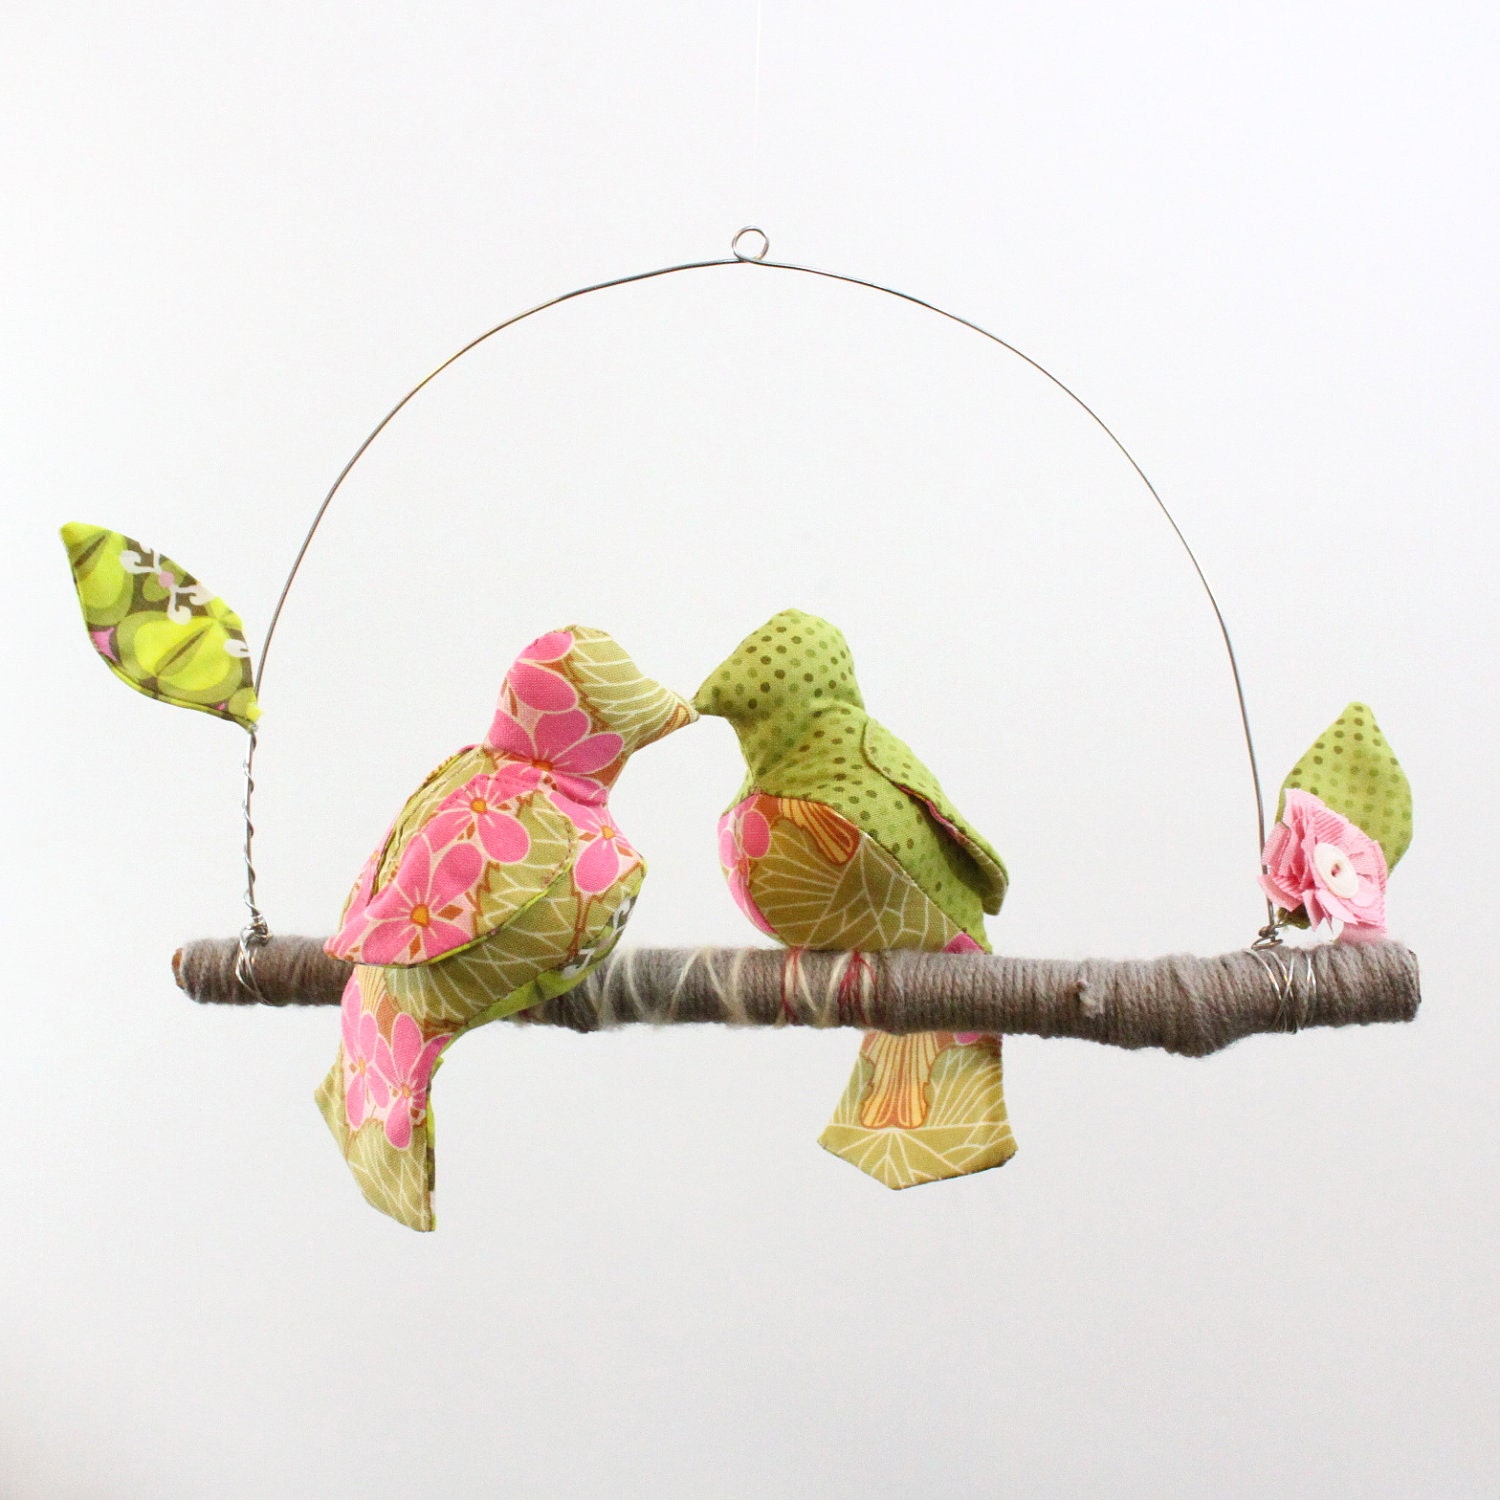 Modern Love Bird Mobile - "2 little lovebirds sitting in a tree K-I-S-S-I-N-G"  in blush pink, lime green, gray